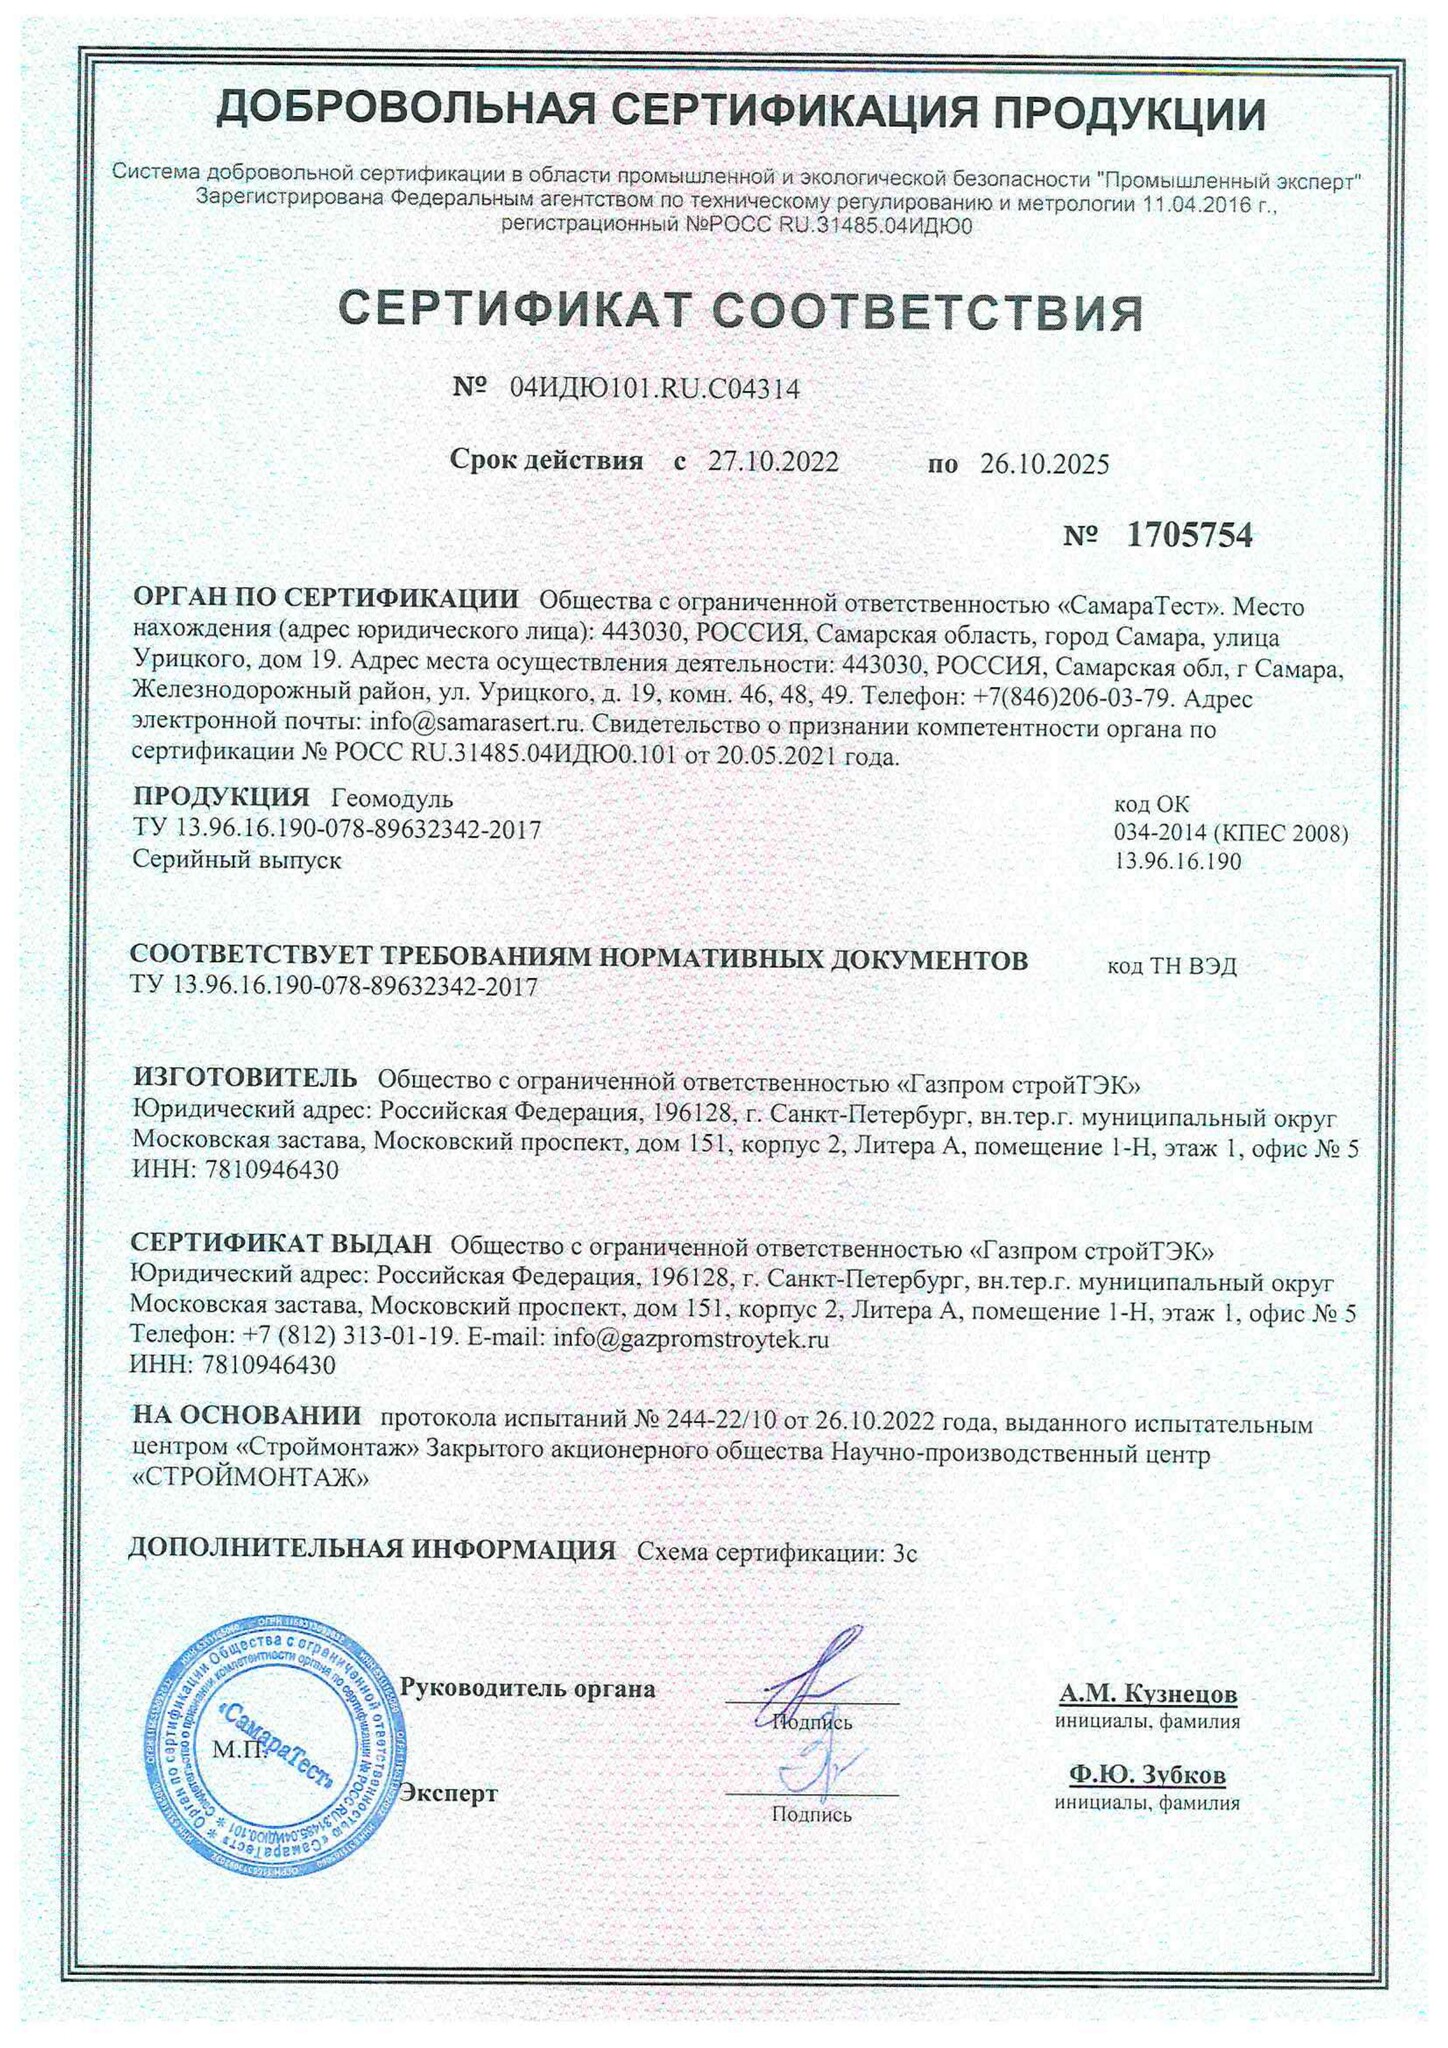 Сертификат Геомодуль до 26.10.2025